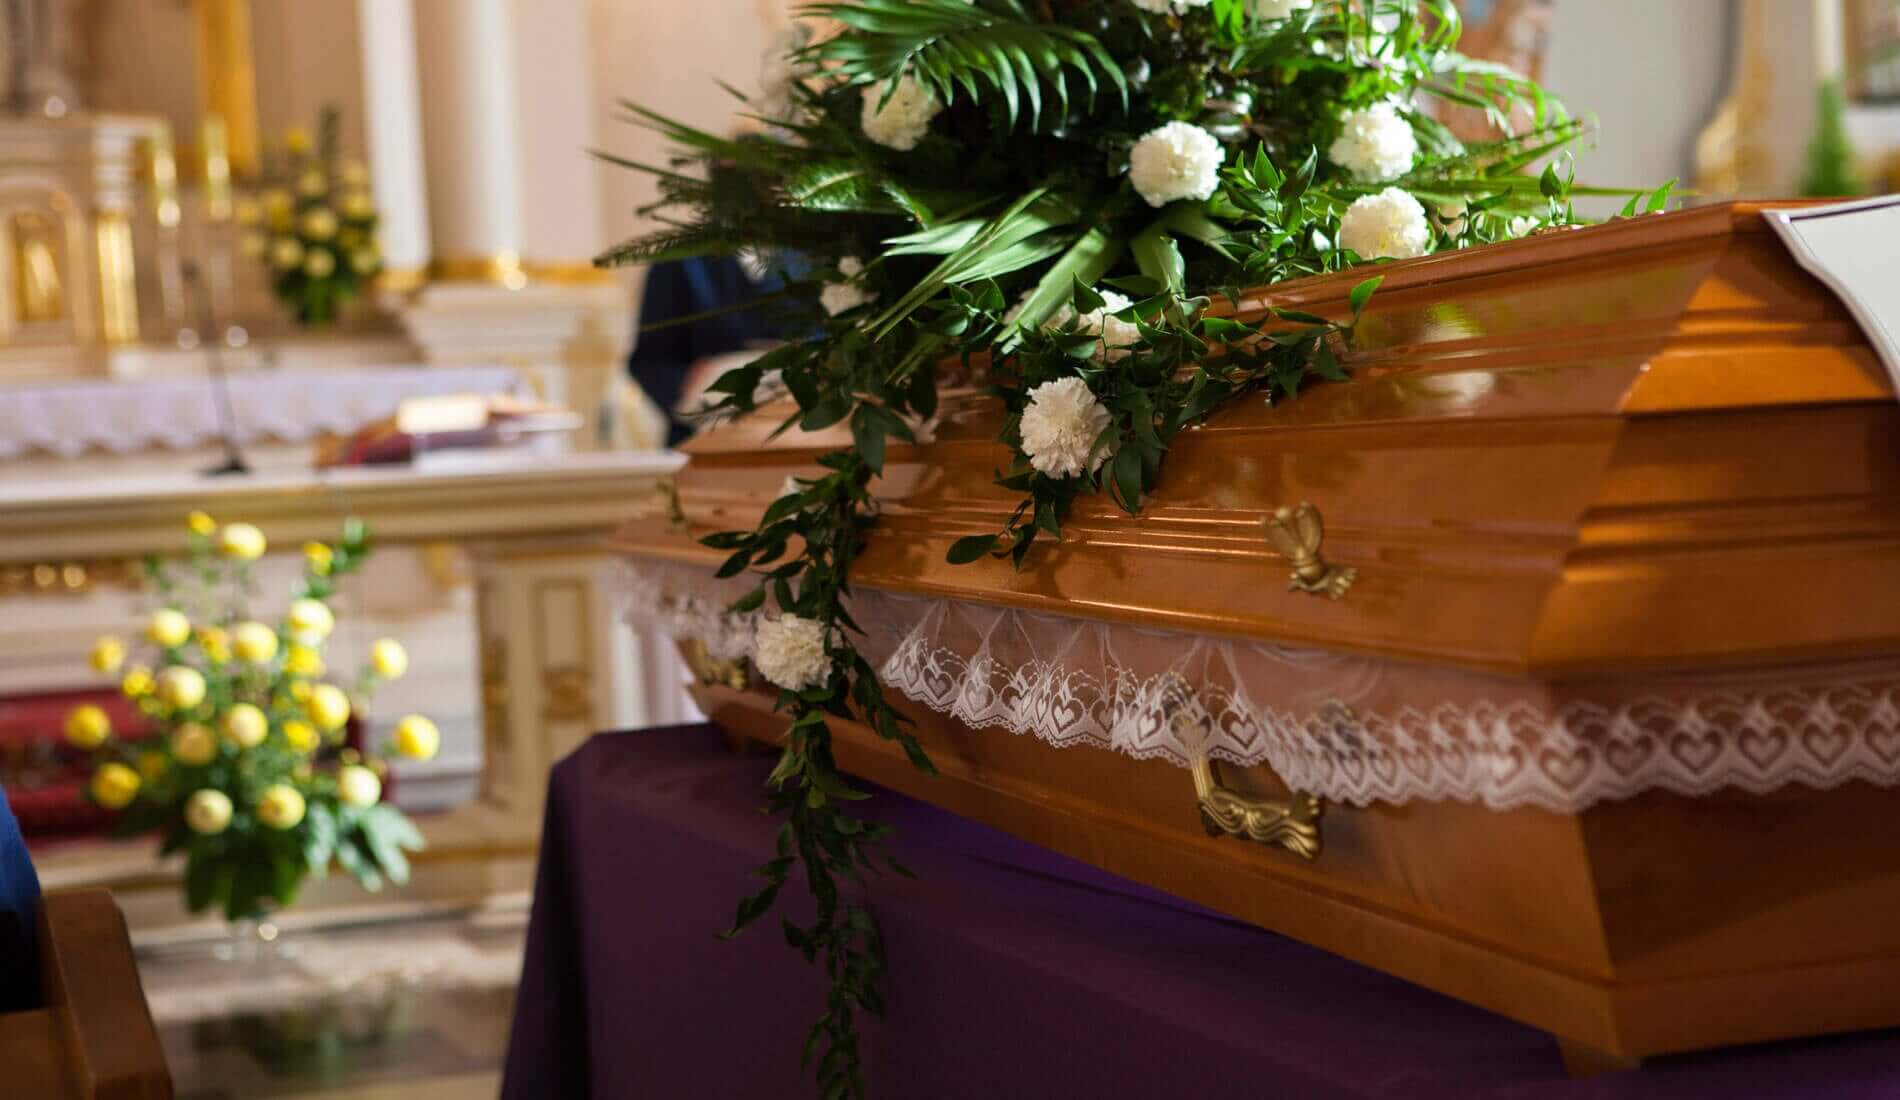 Kompleksowe usługi pogrzebowe